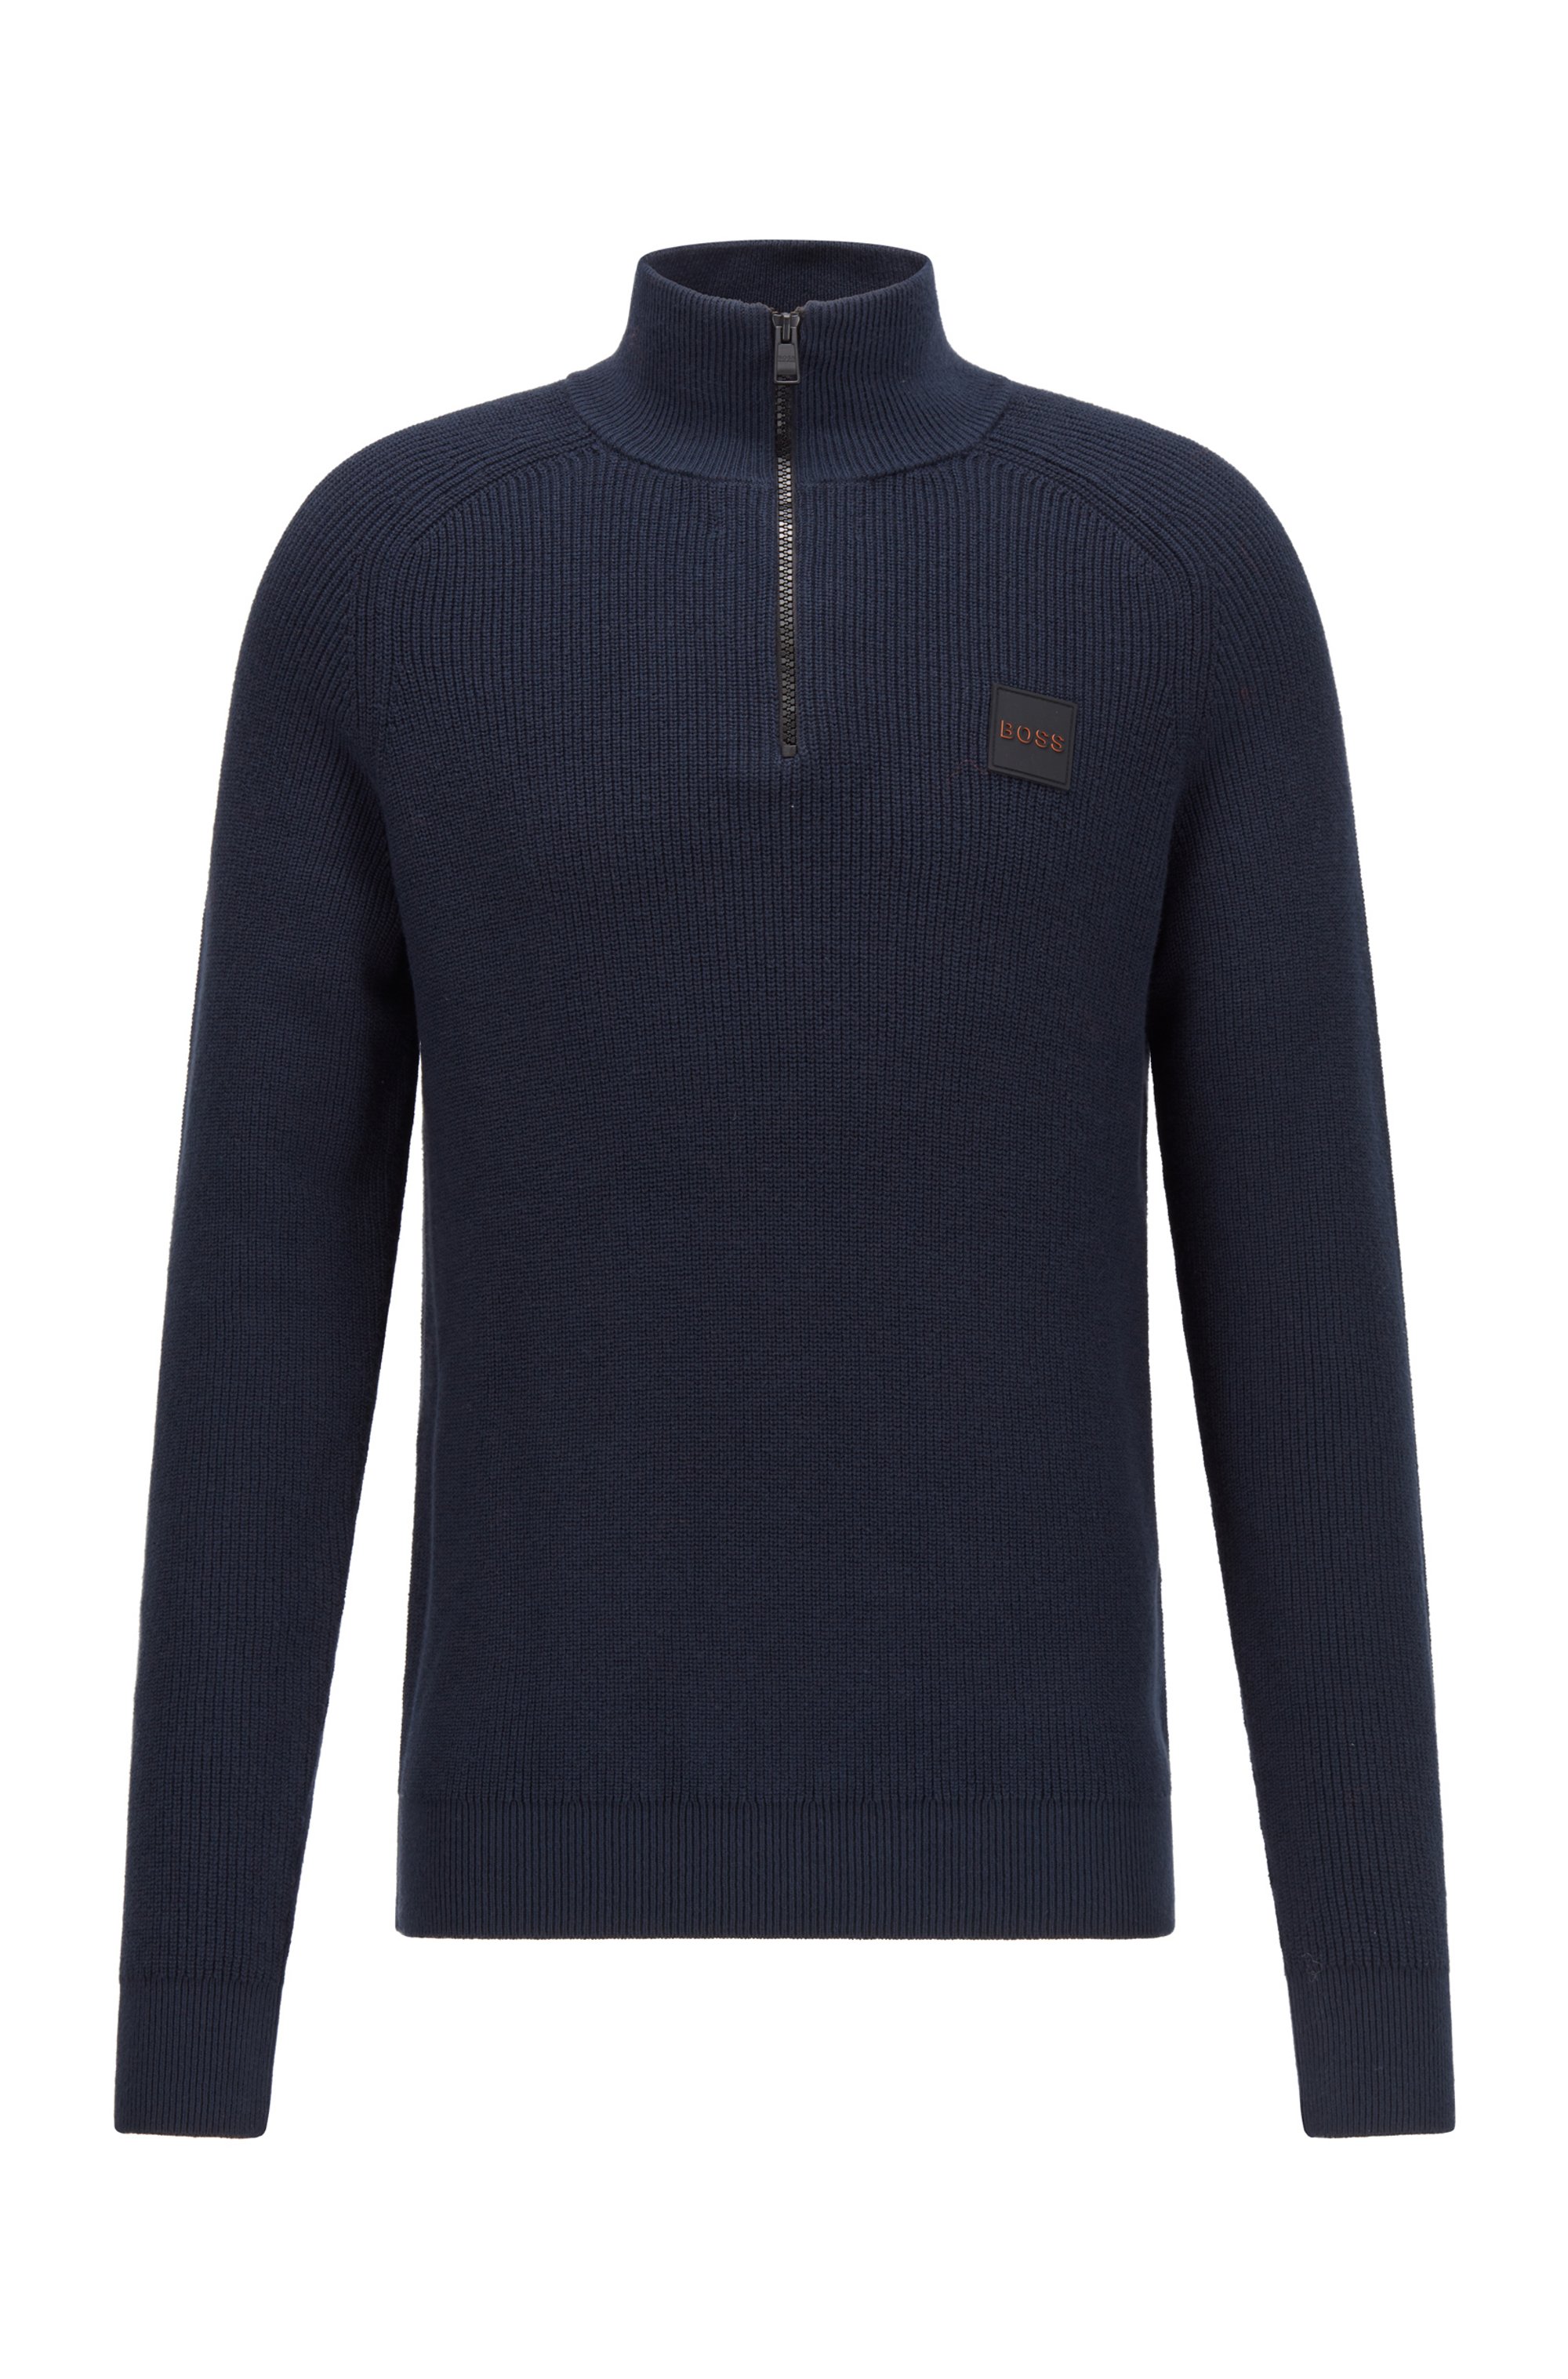 Cotton-blend zip-neck sweater with logo badge, Dark Blue